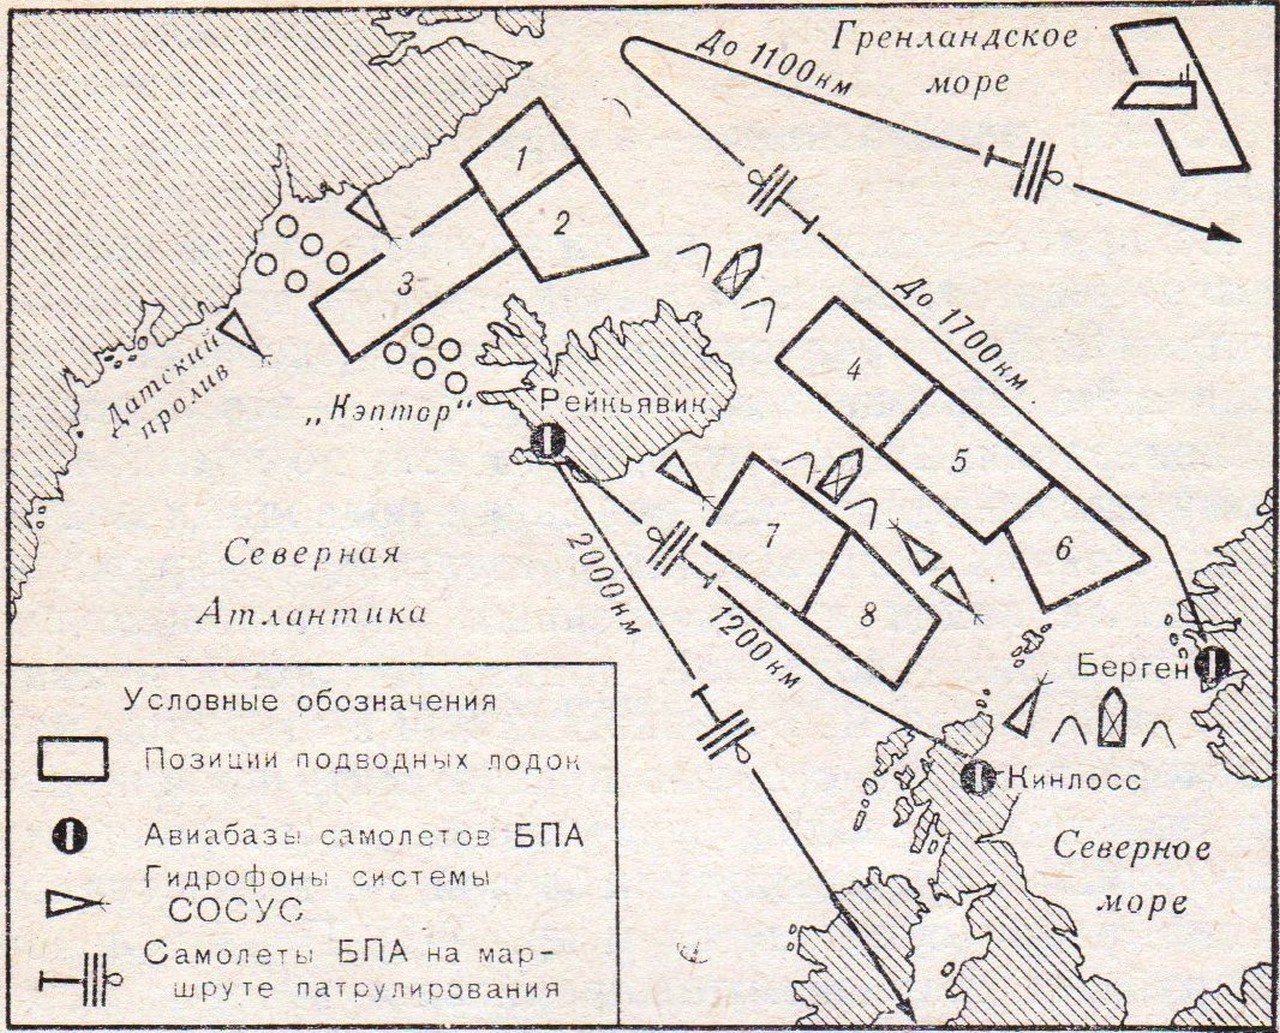 Вариант построения противолодочного рубежа в Северной Атлантике (по книге капитана 1 ранга В. Хвоща).